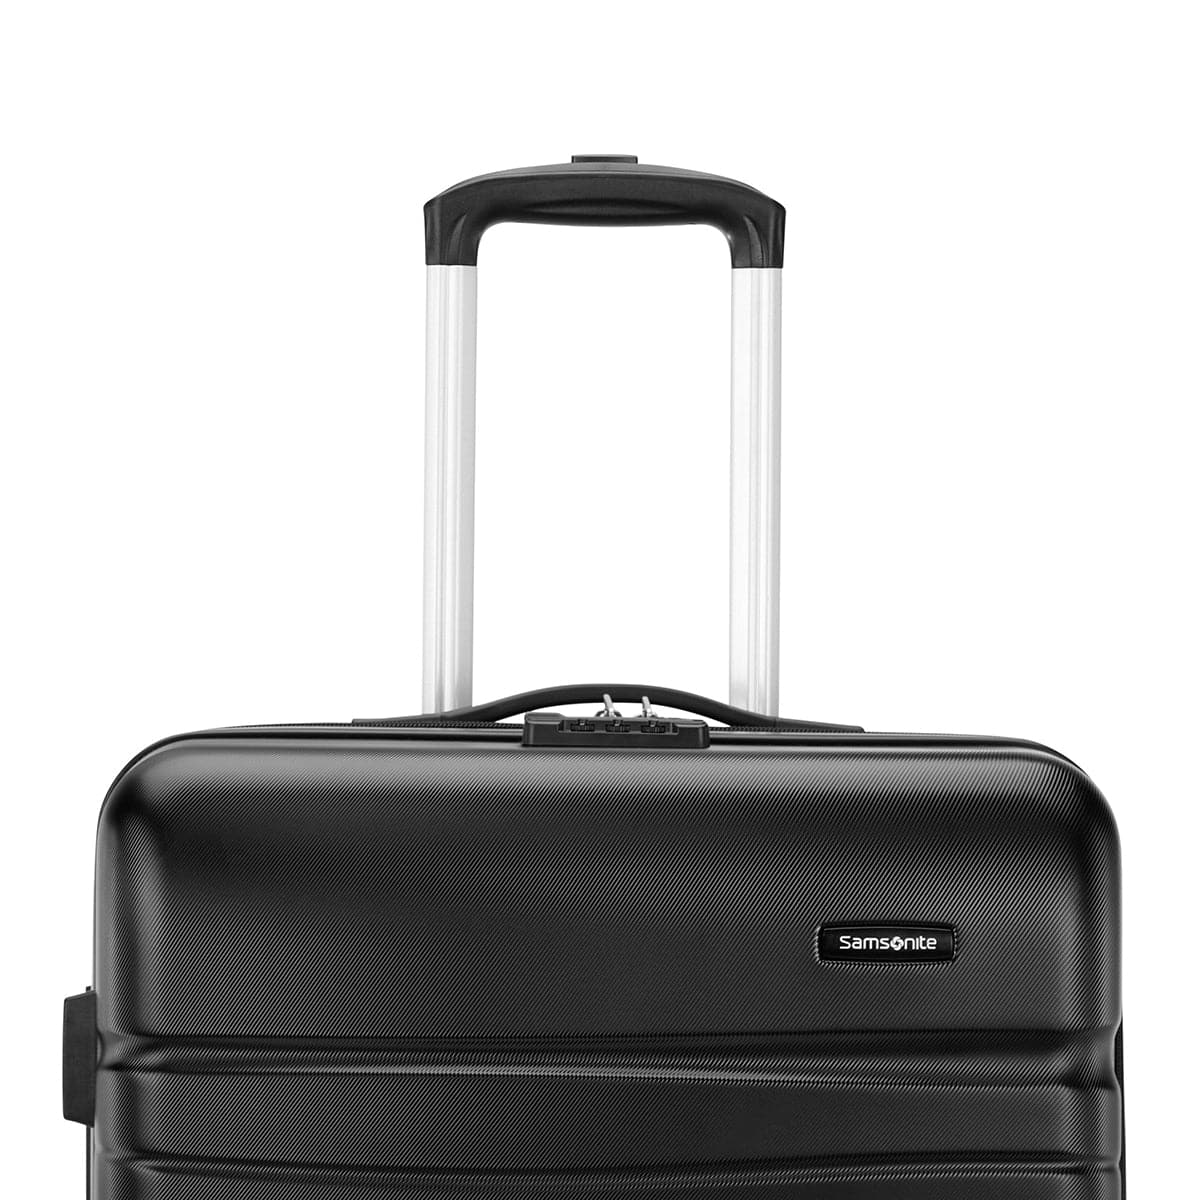 Samsonite Evolve SE 3-Piece Luggage Set